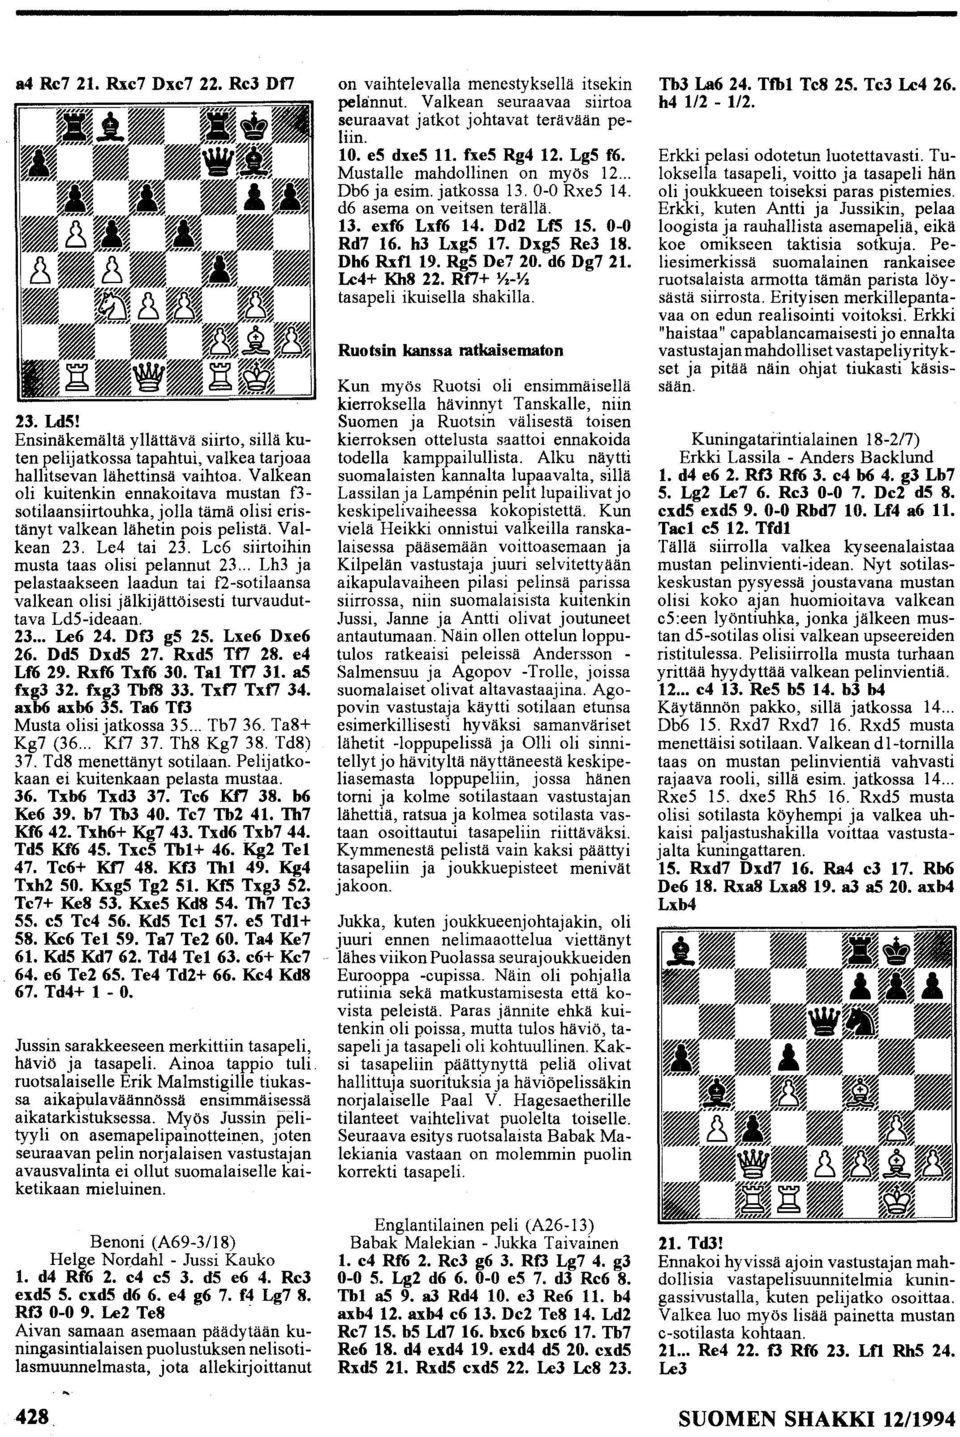 .. Lh3 ja pelastaakseen laadun tai f2-sotilaansa valkean olisi jälkijättöisesti turvauduttava LdS-ideaan. 23... Le6 24. DfJ g5 25. Lxe6 Dxe6 26. Dd5 Dxd5 27. Rxd5 Tt7 28. e4 Lf6 29. Rxf6 Txf6 30.